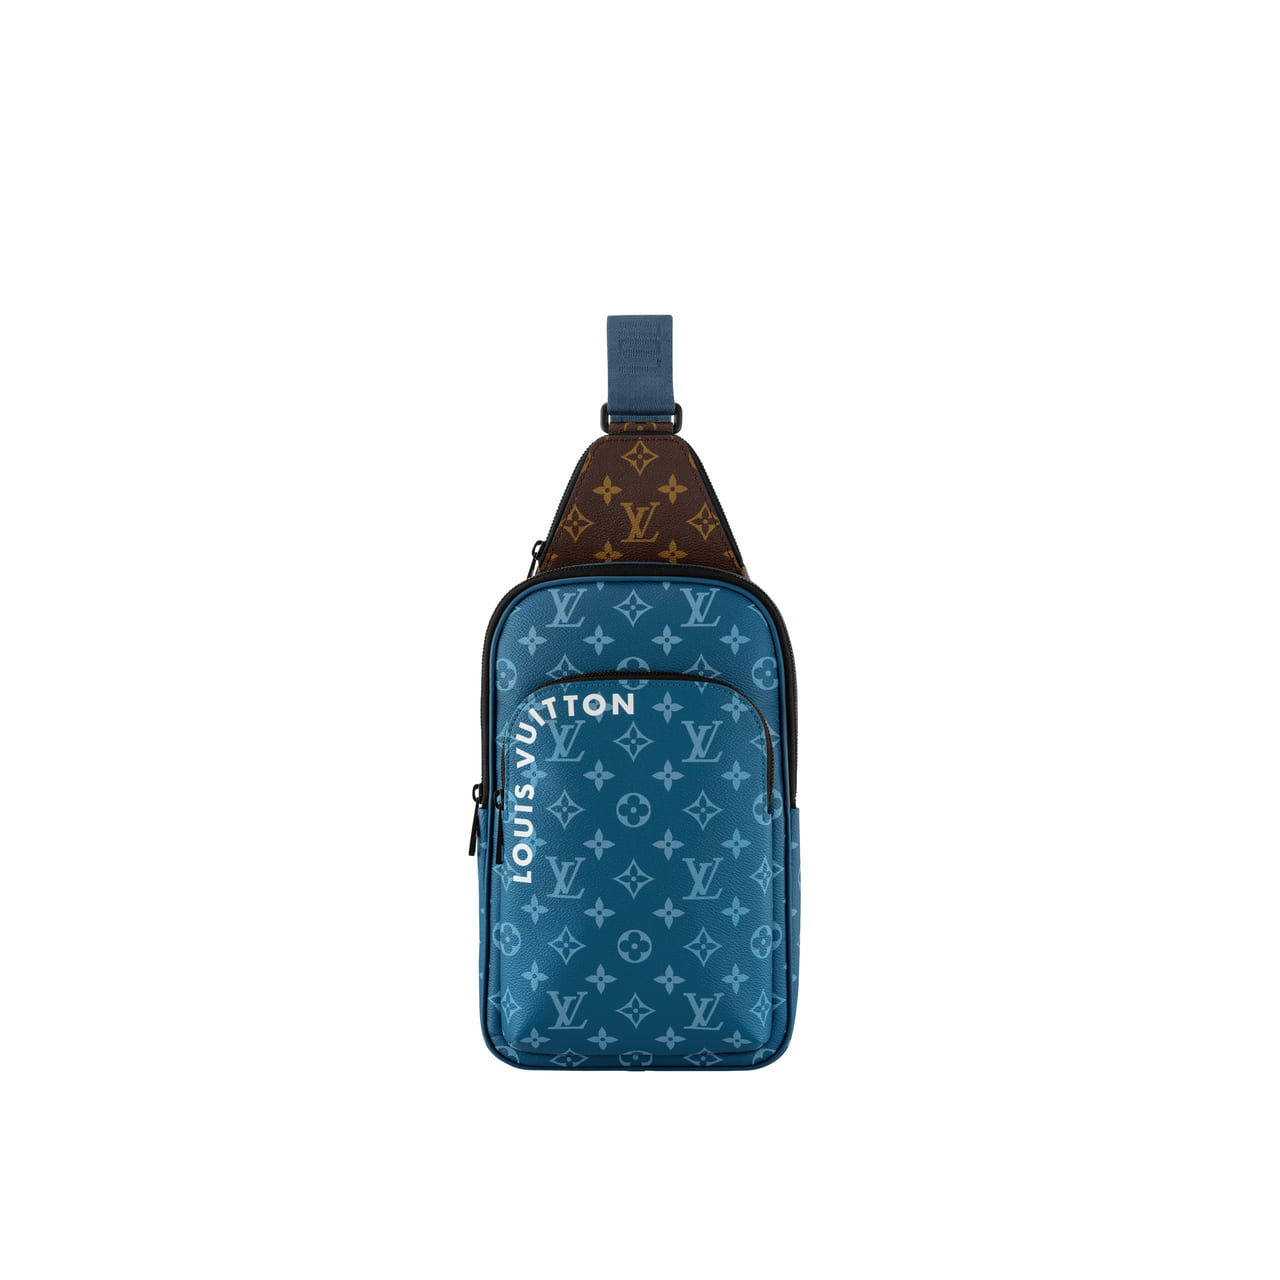 「Louis Vuitton（ルイ・ヴィトン）」からメンズの新作バッグが登場。ブルーのモノグラム･キャンバスが目を引く逸品